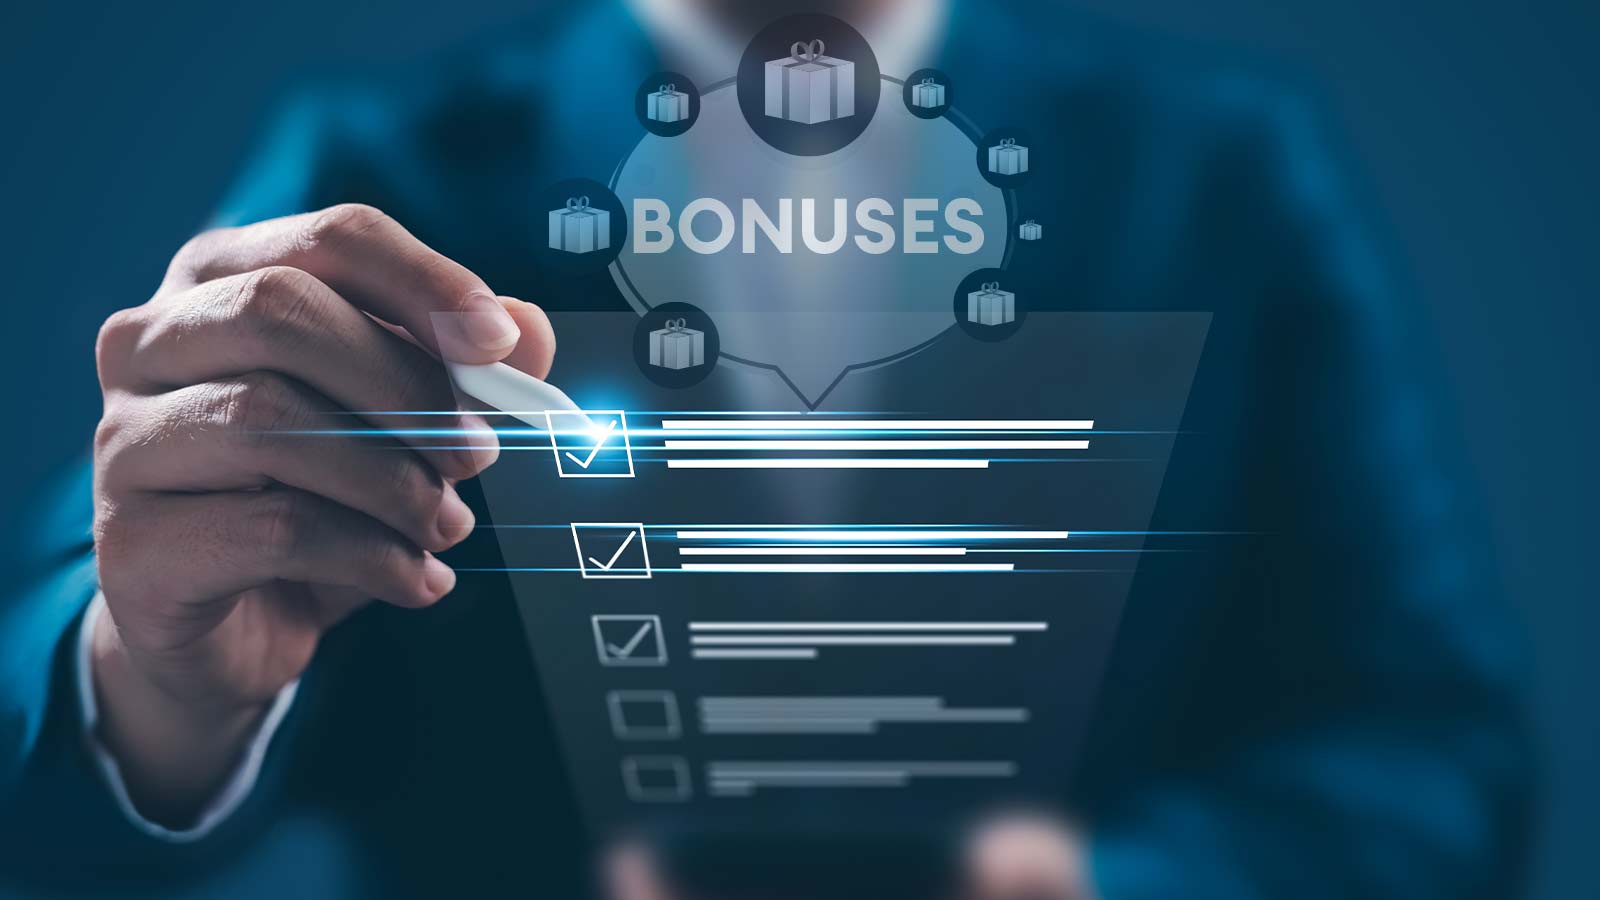 Should You Hunt for Bonuses